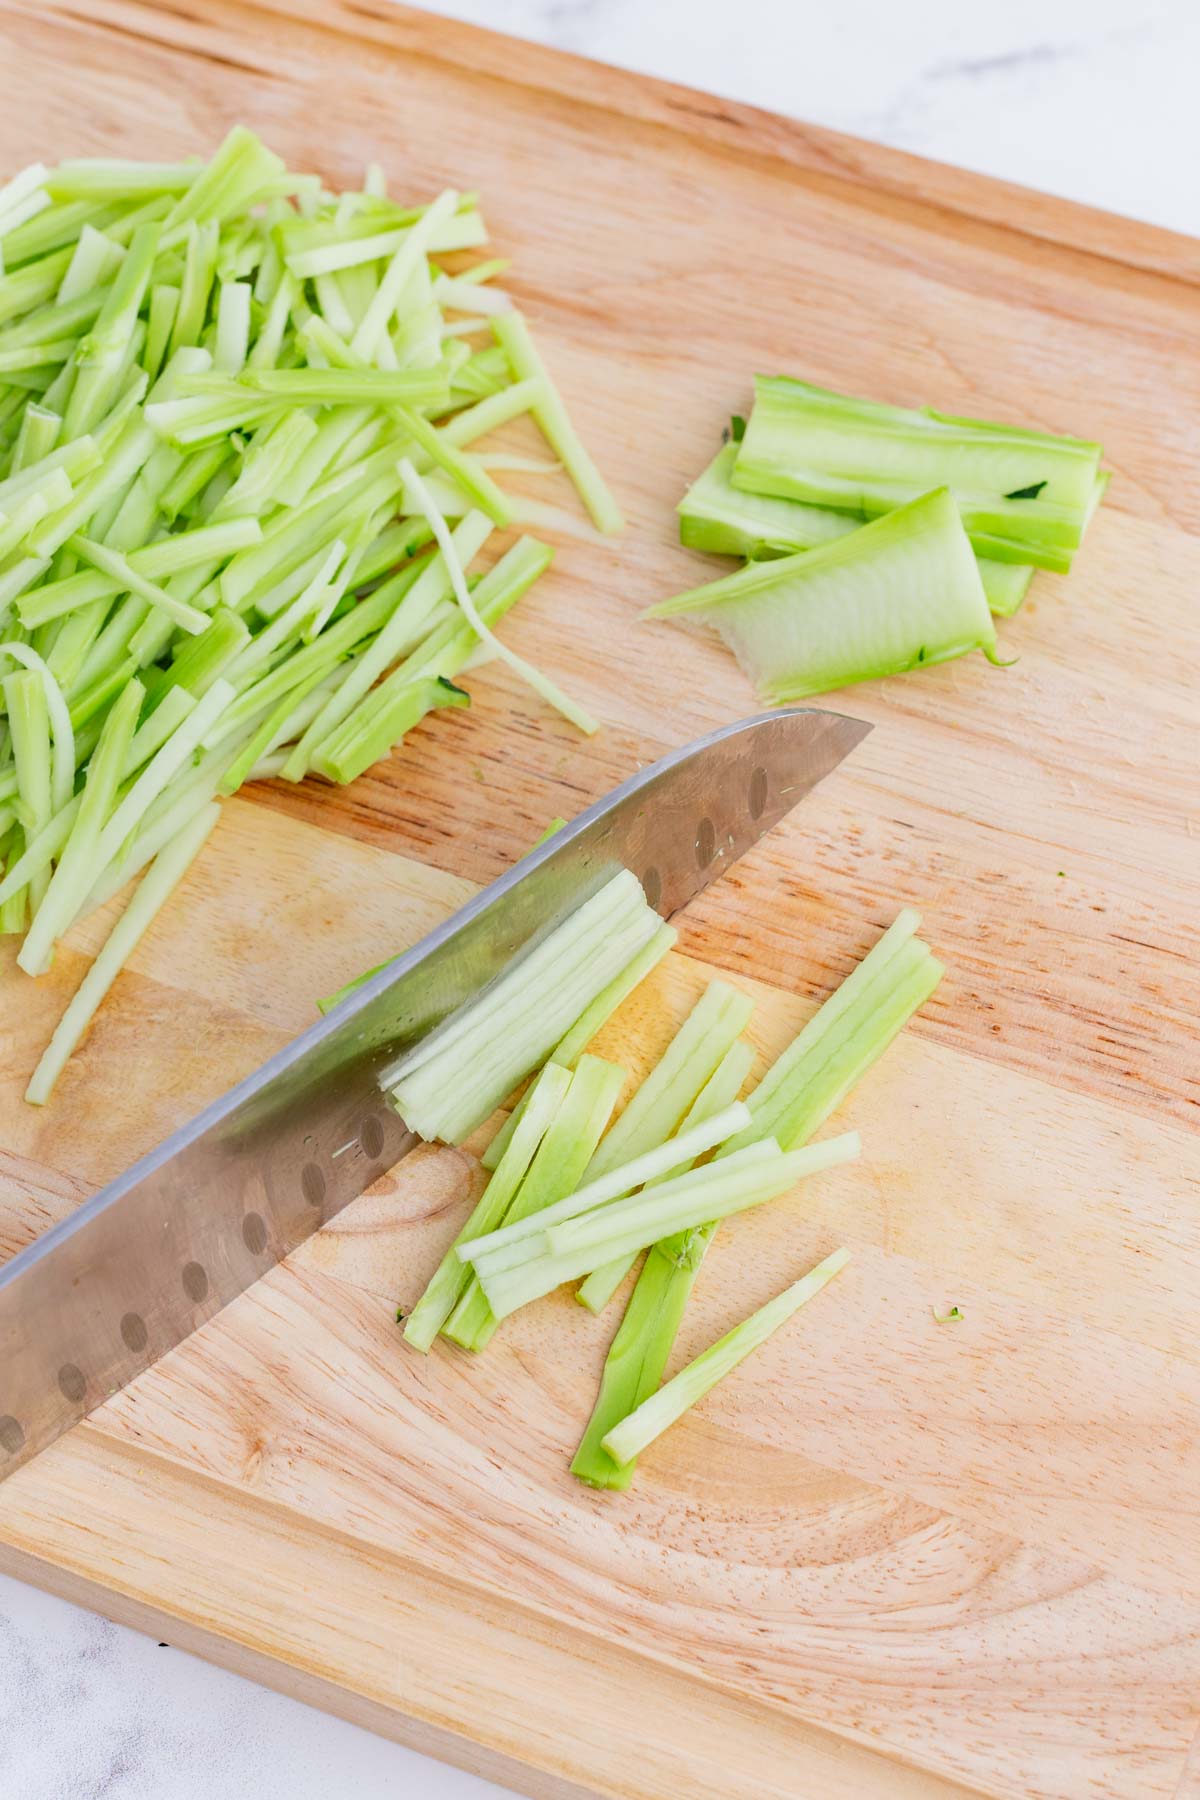 A knife julienne cuts broccoli stalks.